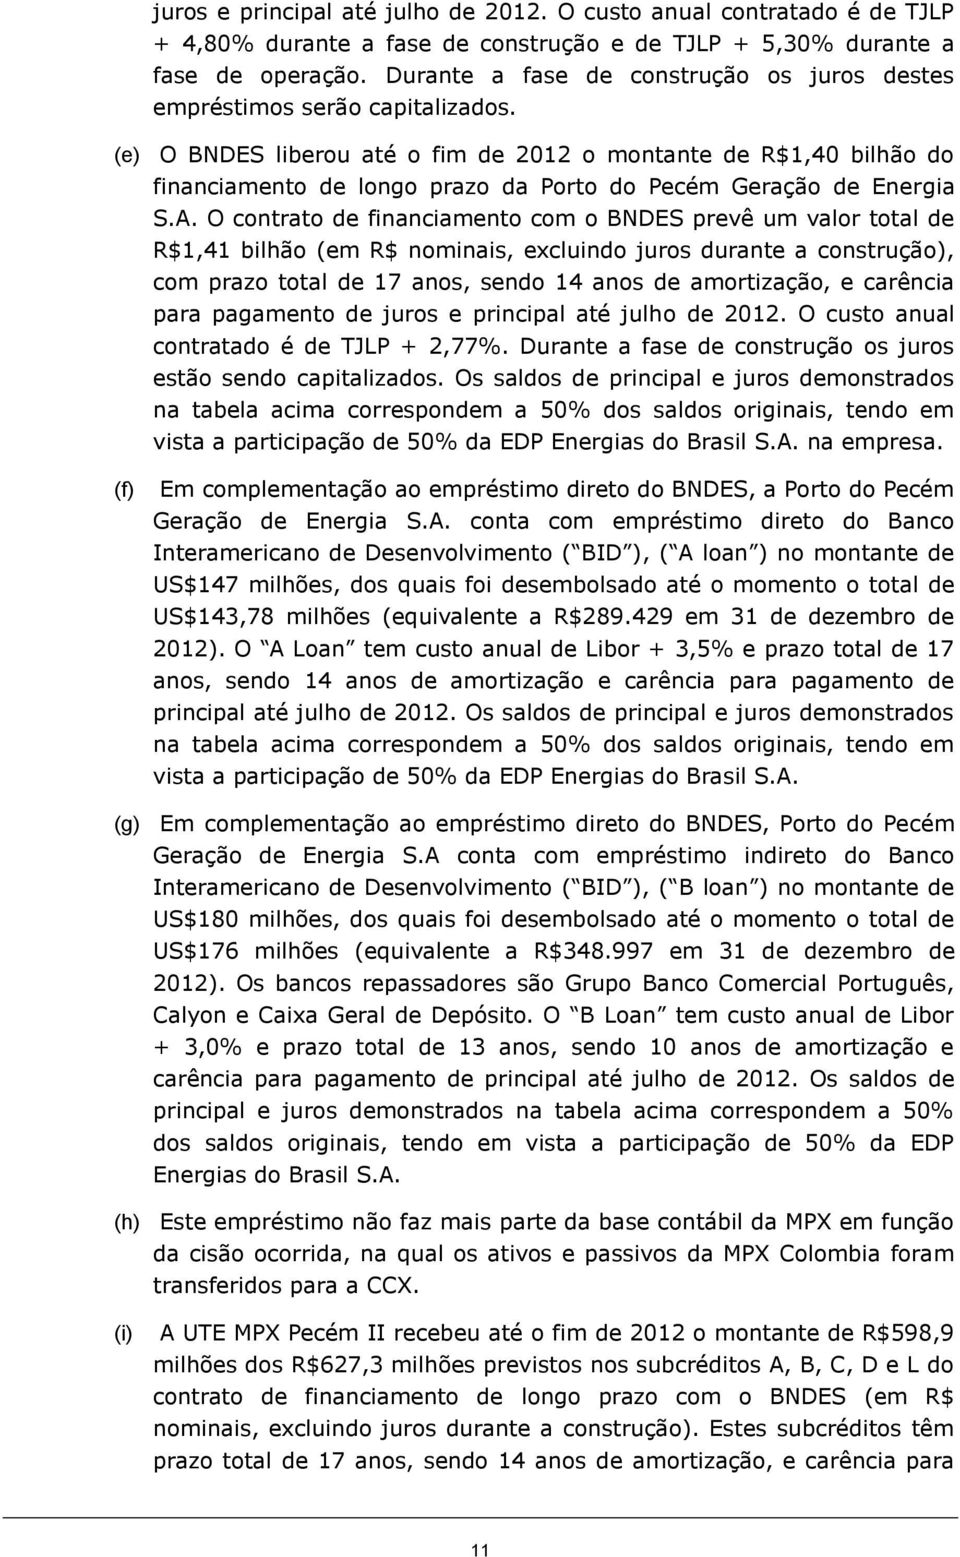 (e) O BNDES liberou até o fim de 2012 o montante de R$1,40 bilhão do financiamento de longo prazo da Porto do Pecém Geração de Energia S.A.